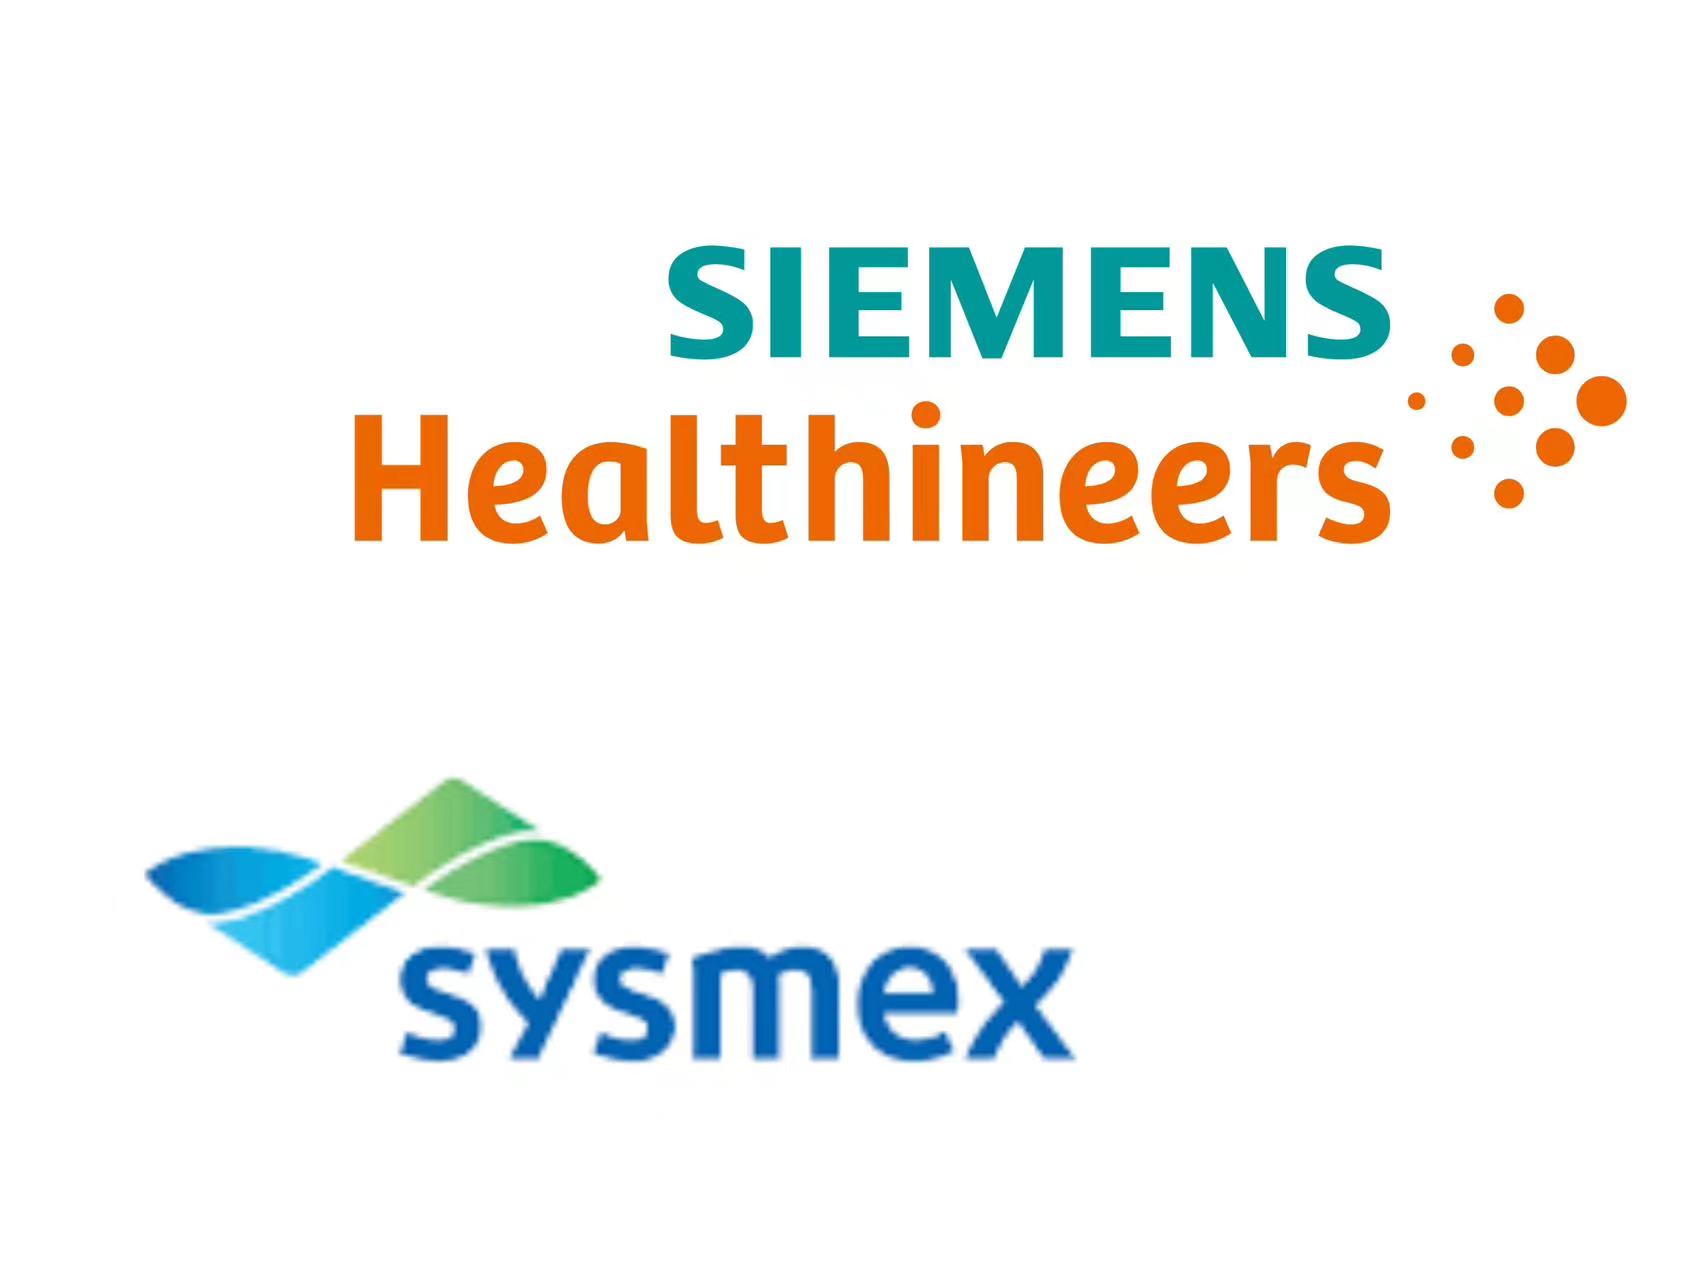 Siemens Healthineers, Sysmex Ink Hemostasis Supply Agreement